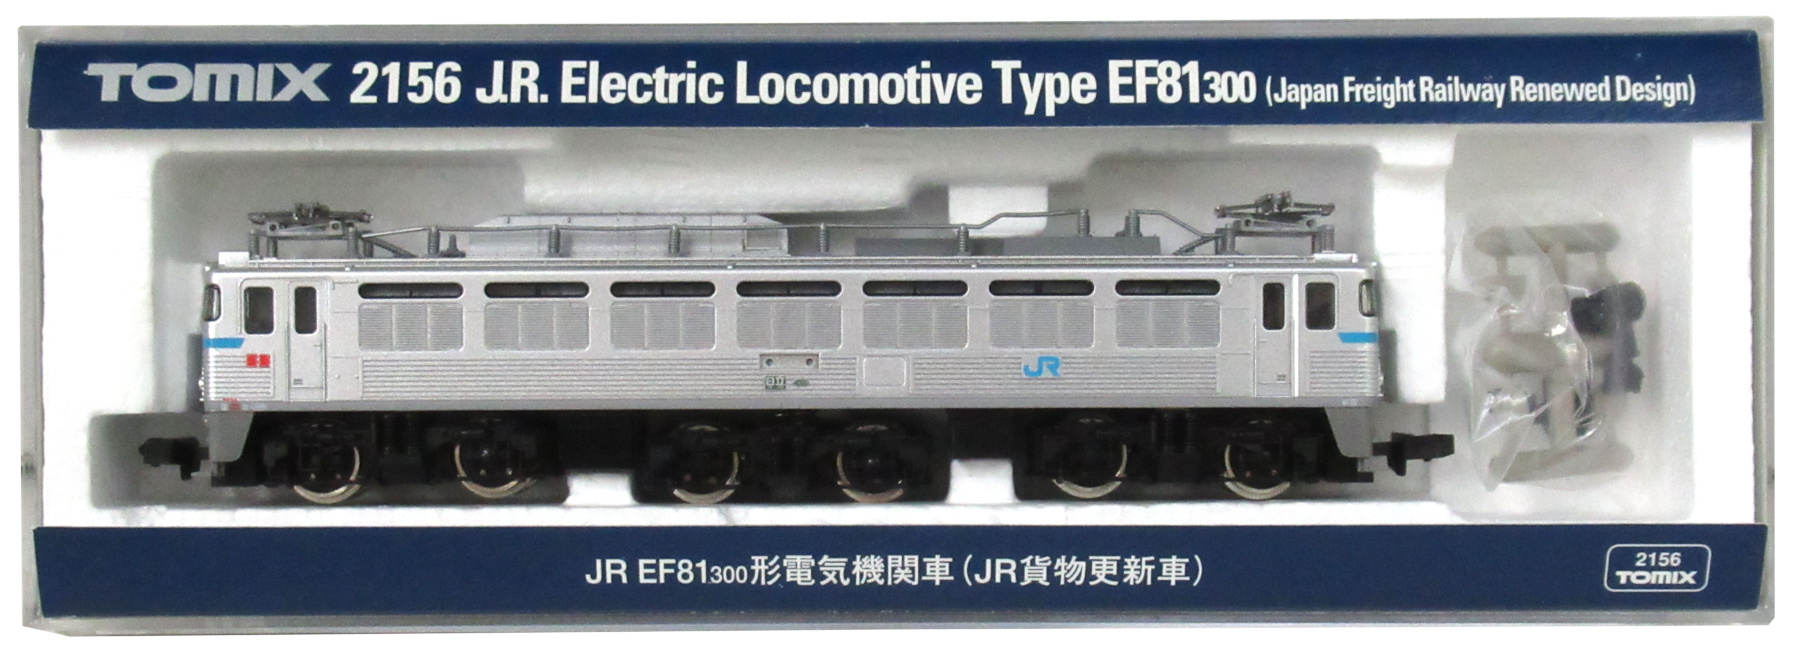 公式]鉄道模型(2156JR EF81-300形 電気機関車 (304号機・JR貨物更新車